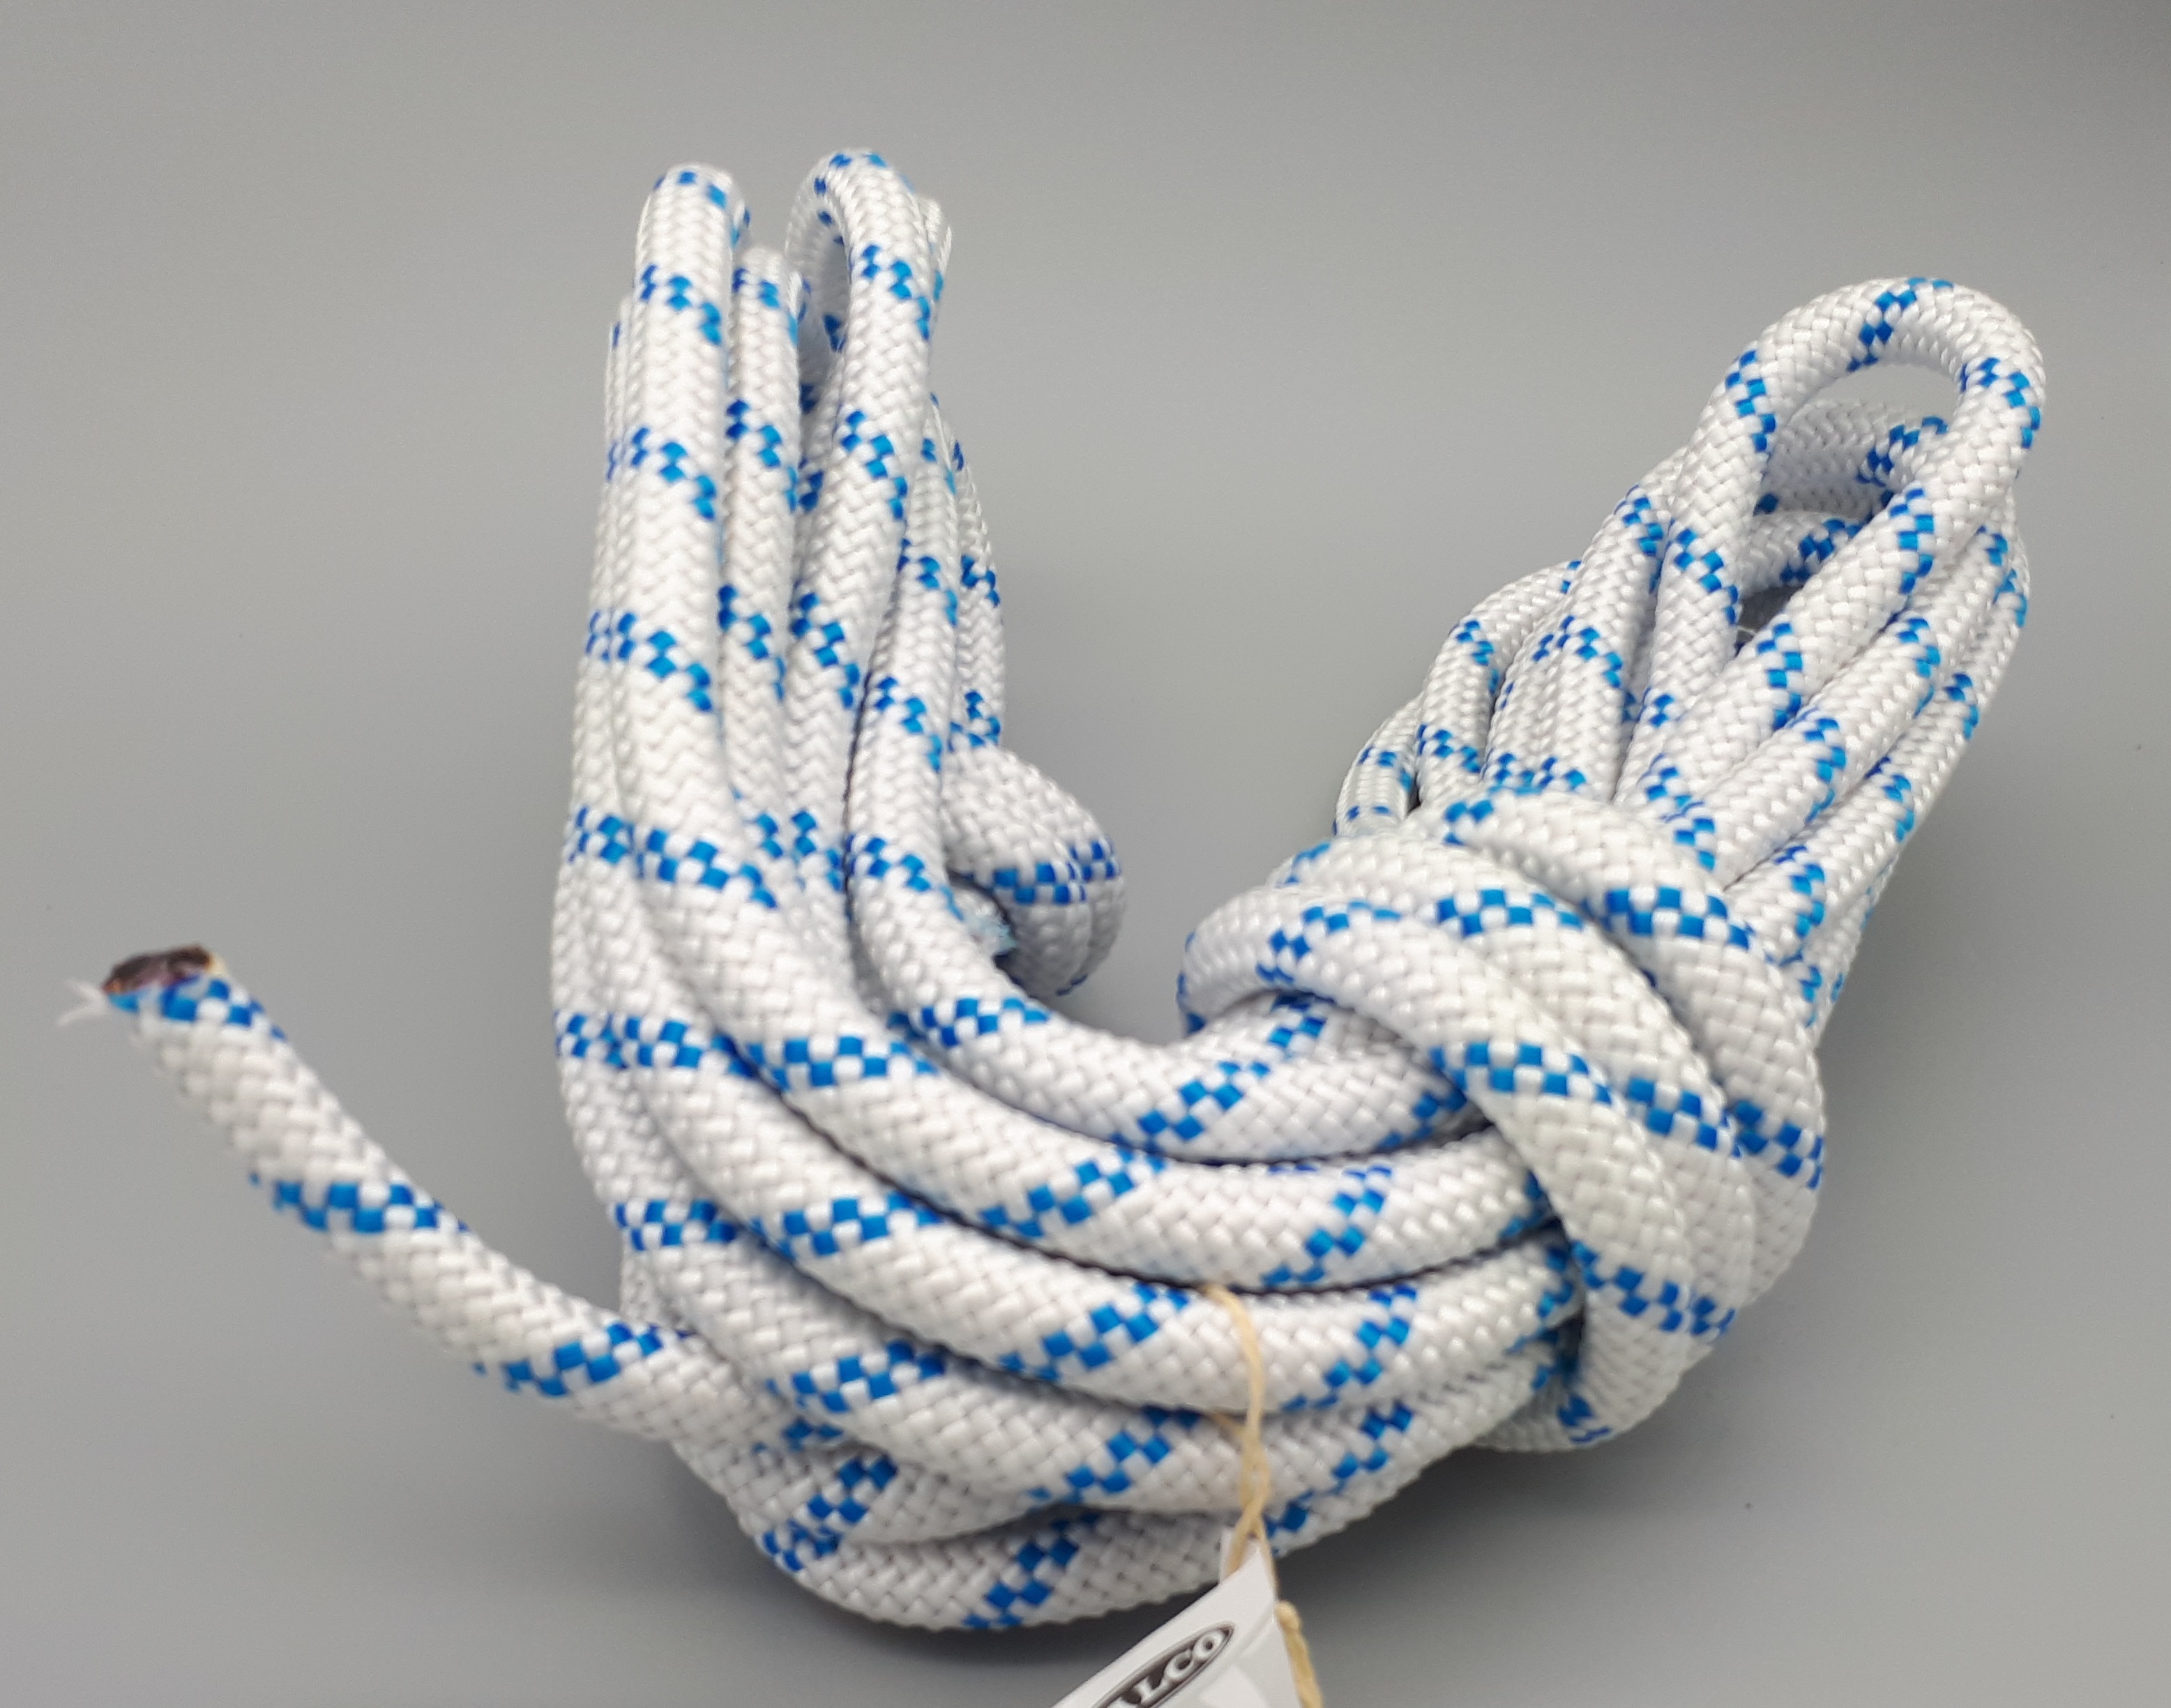 Cut rope 3 mm diameter/20 m